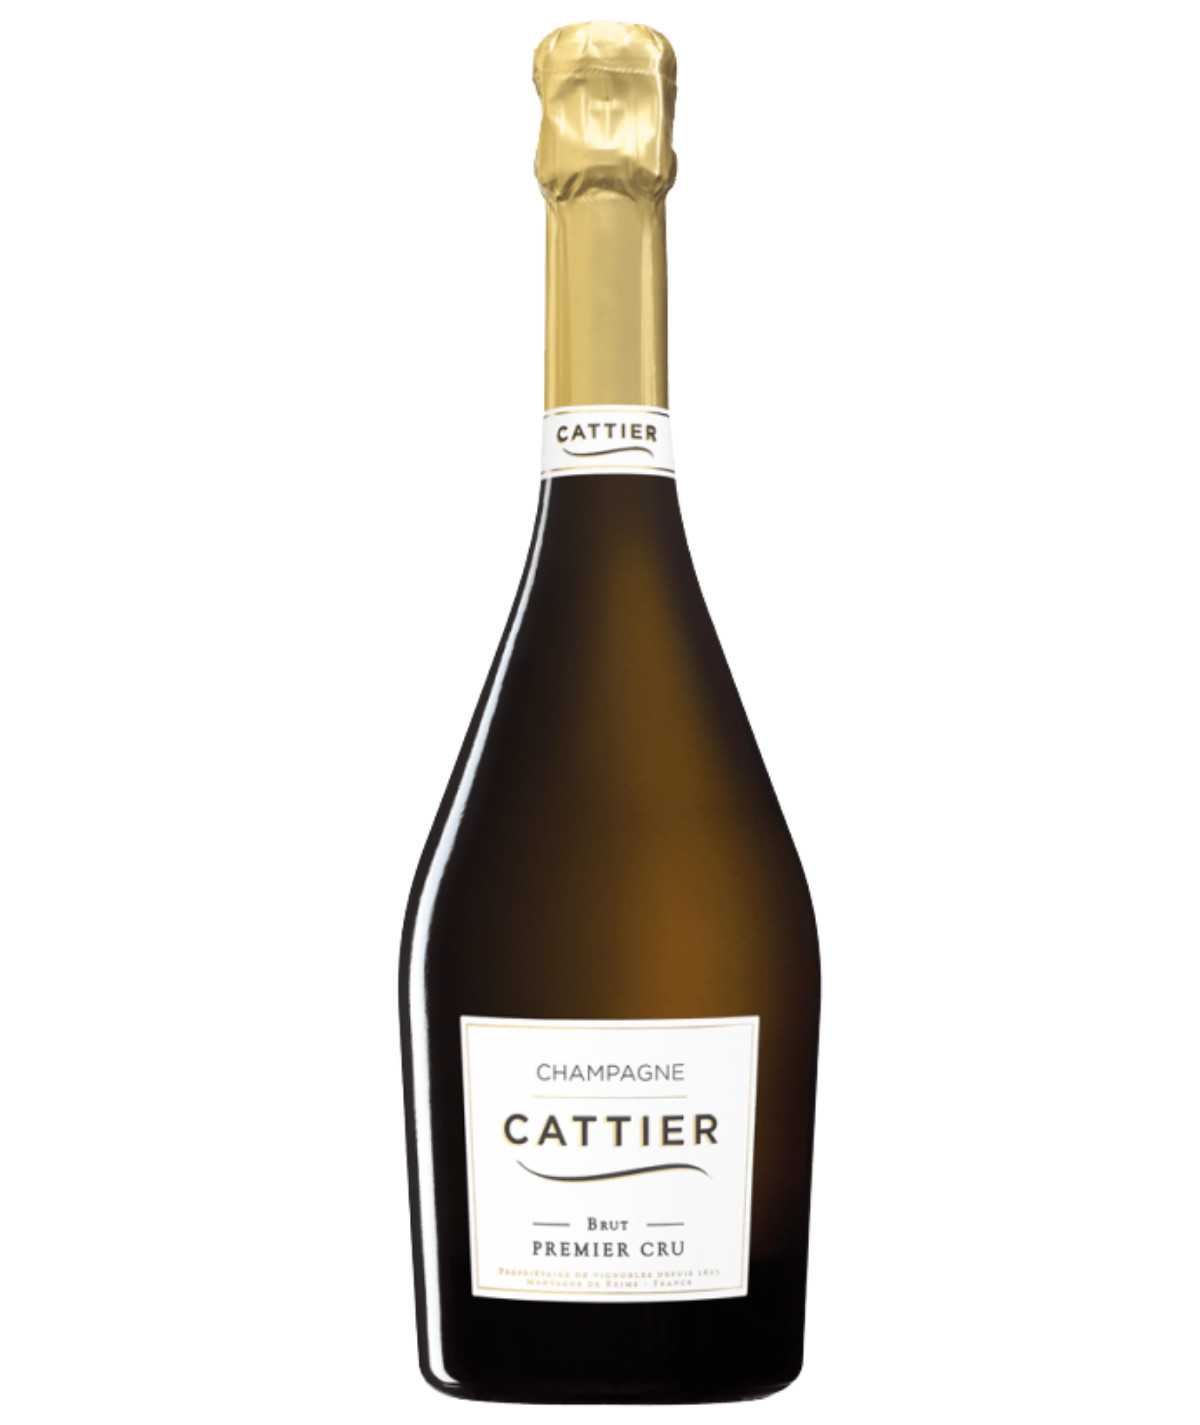 CATTIER champagne Brut Premier Cru